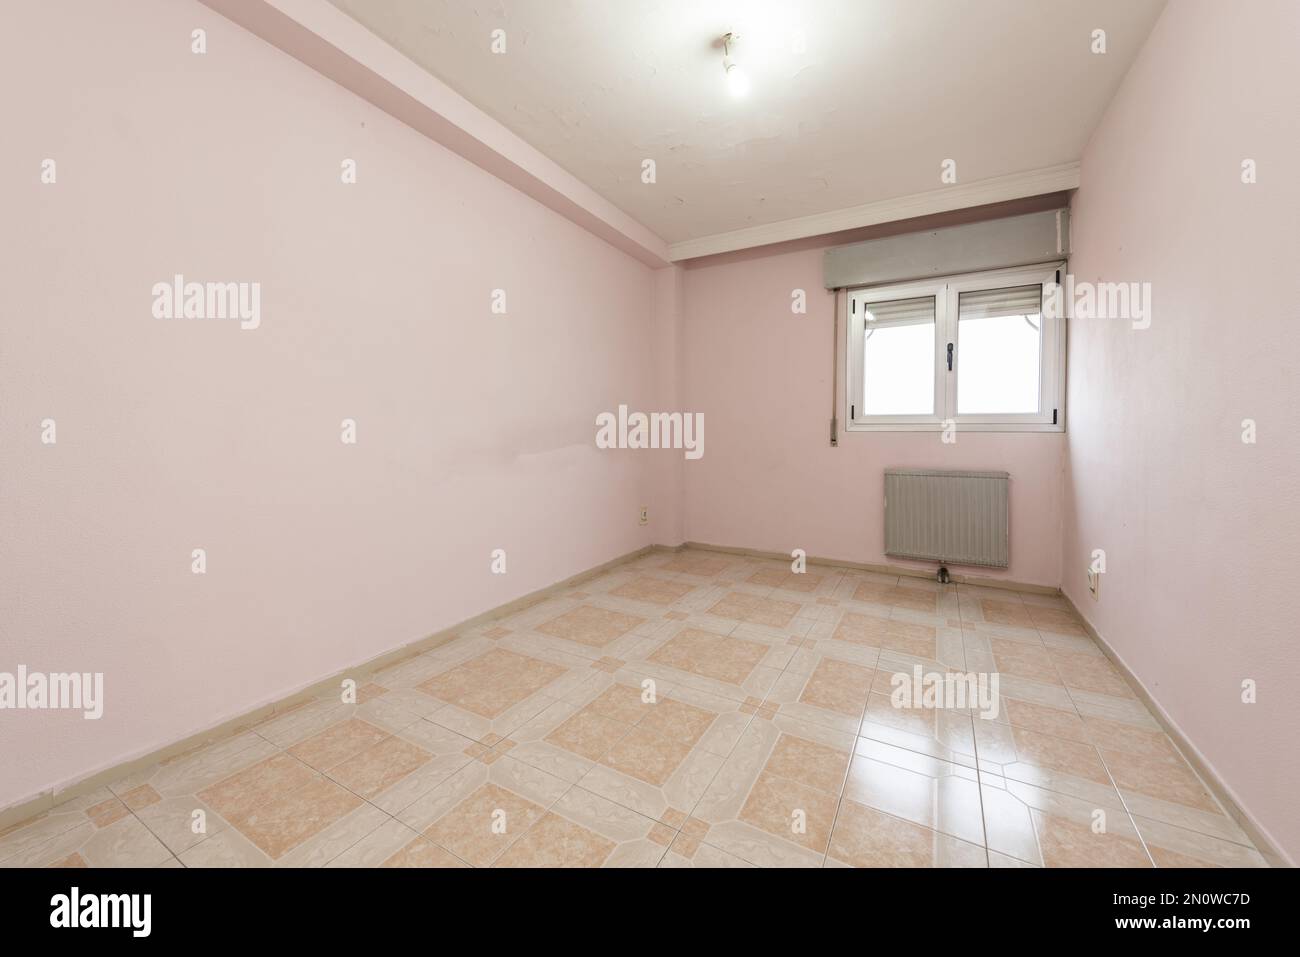 Camera completamente vuota con pareti dipinte di rosa e vecchi pavimenti in gres in due tonalità di colore Foto Stock